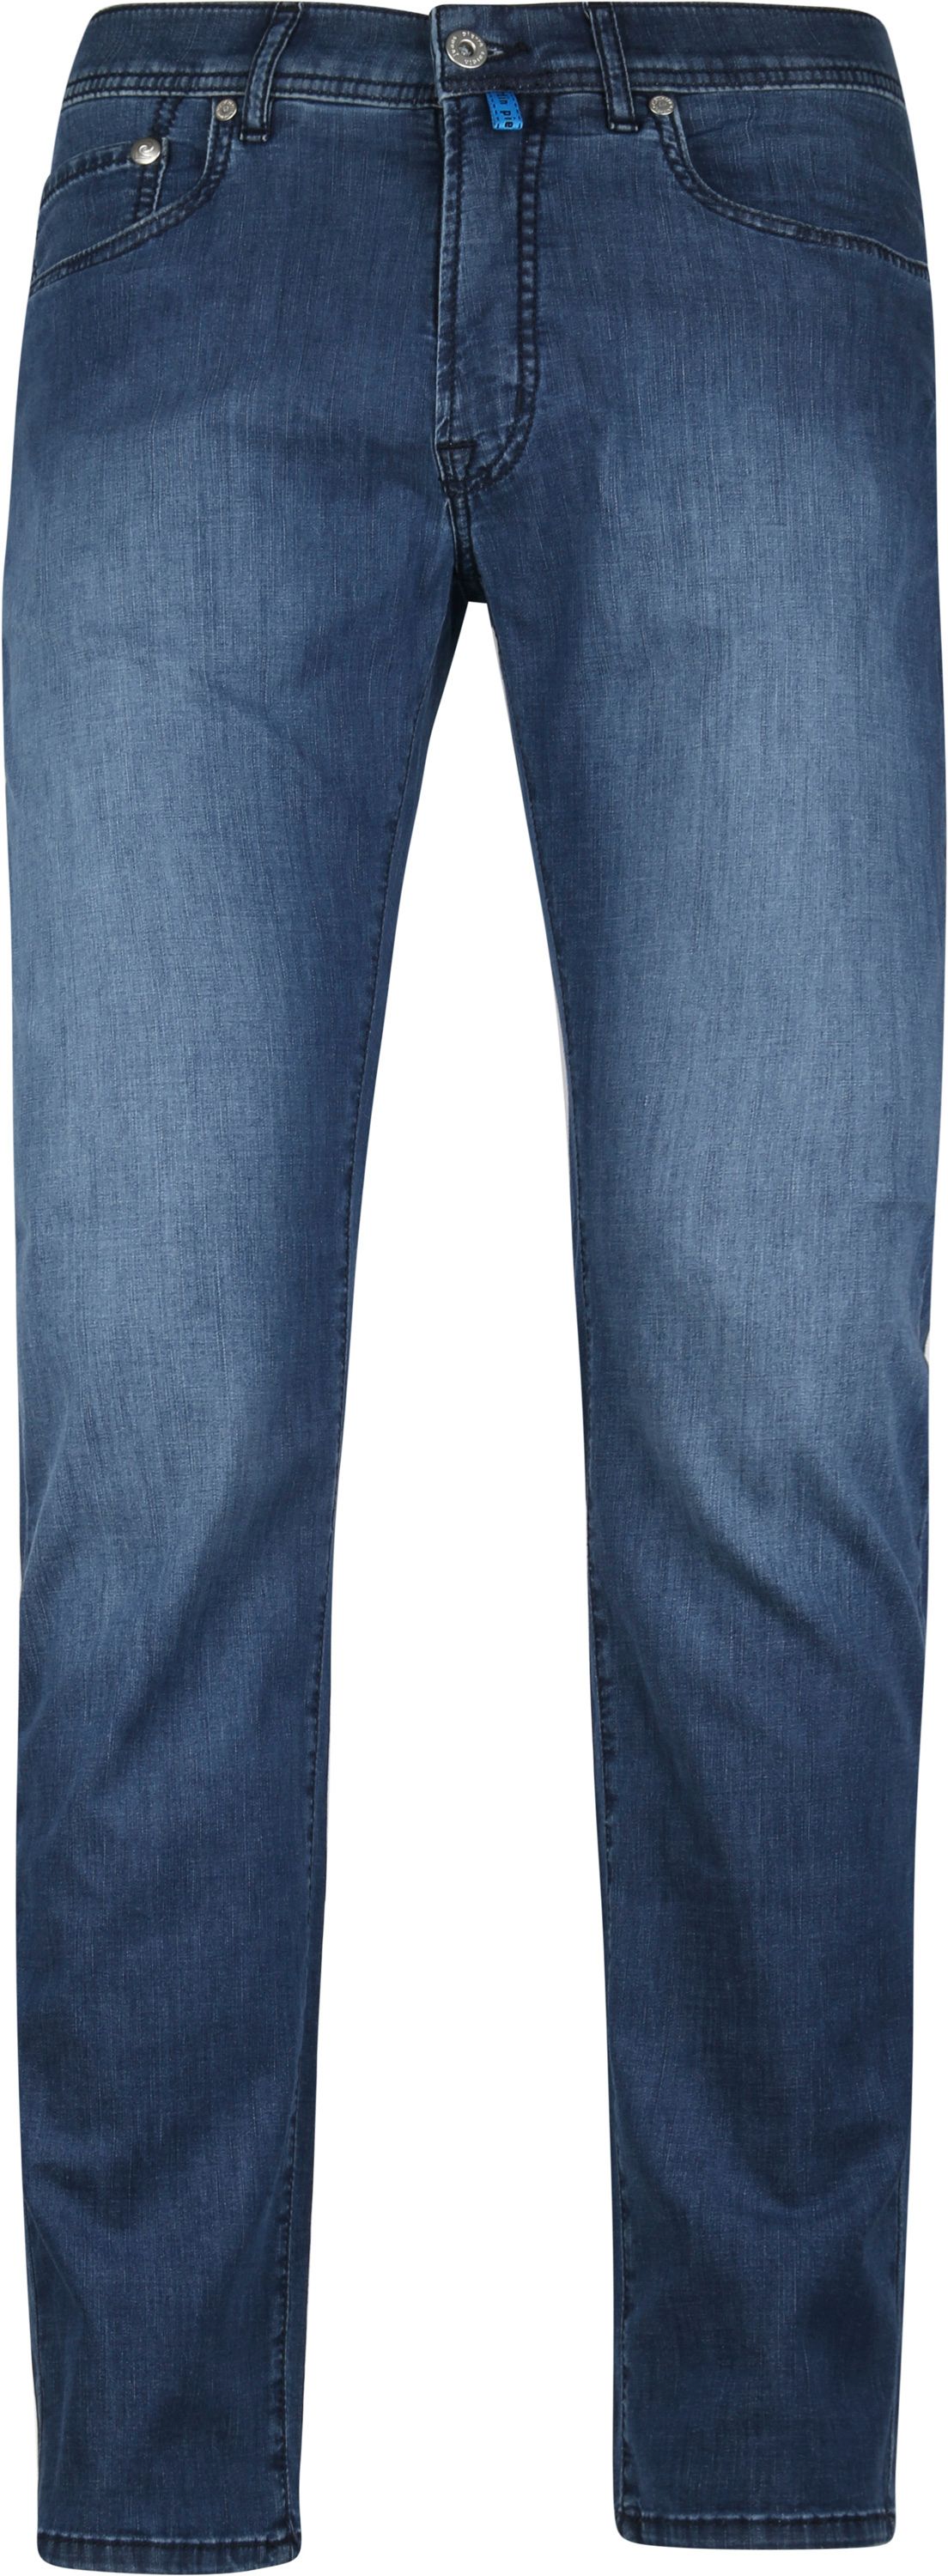 Pierre Cardin Jeans Lyon Dark Blue Dark Blue size W 31